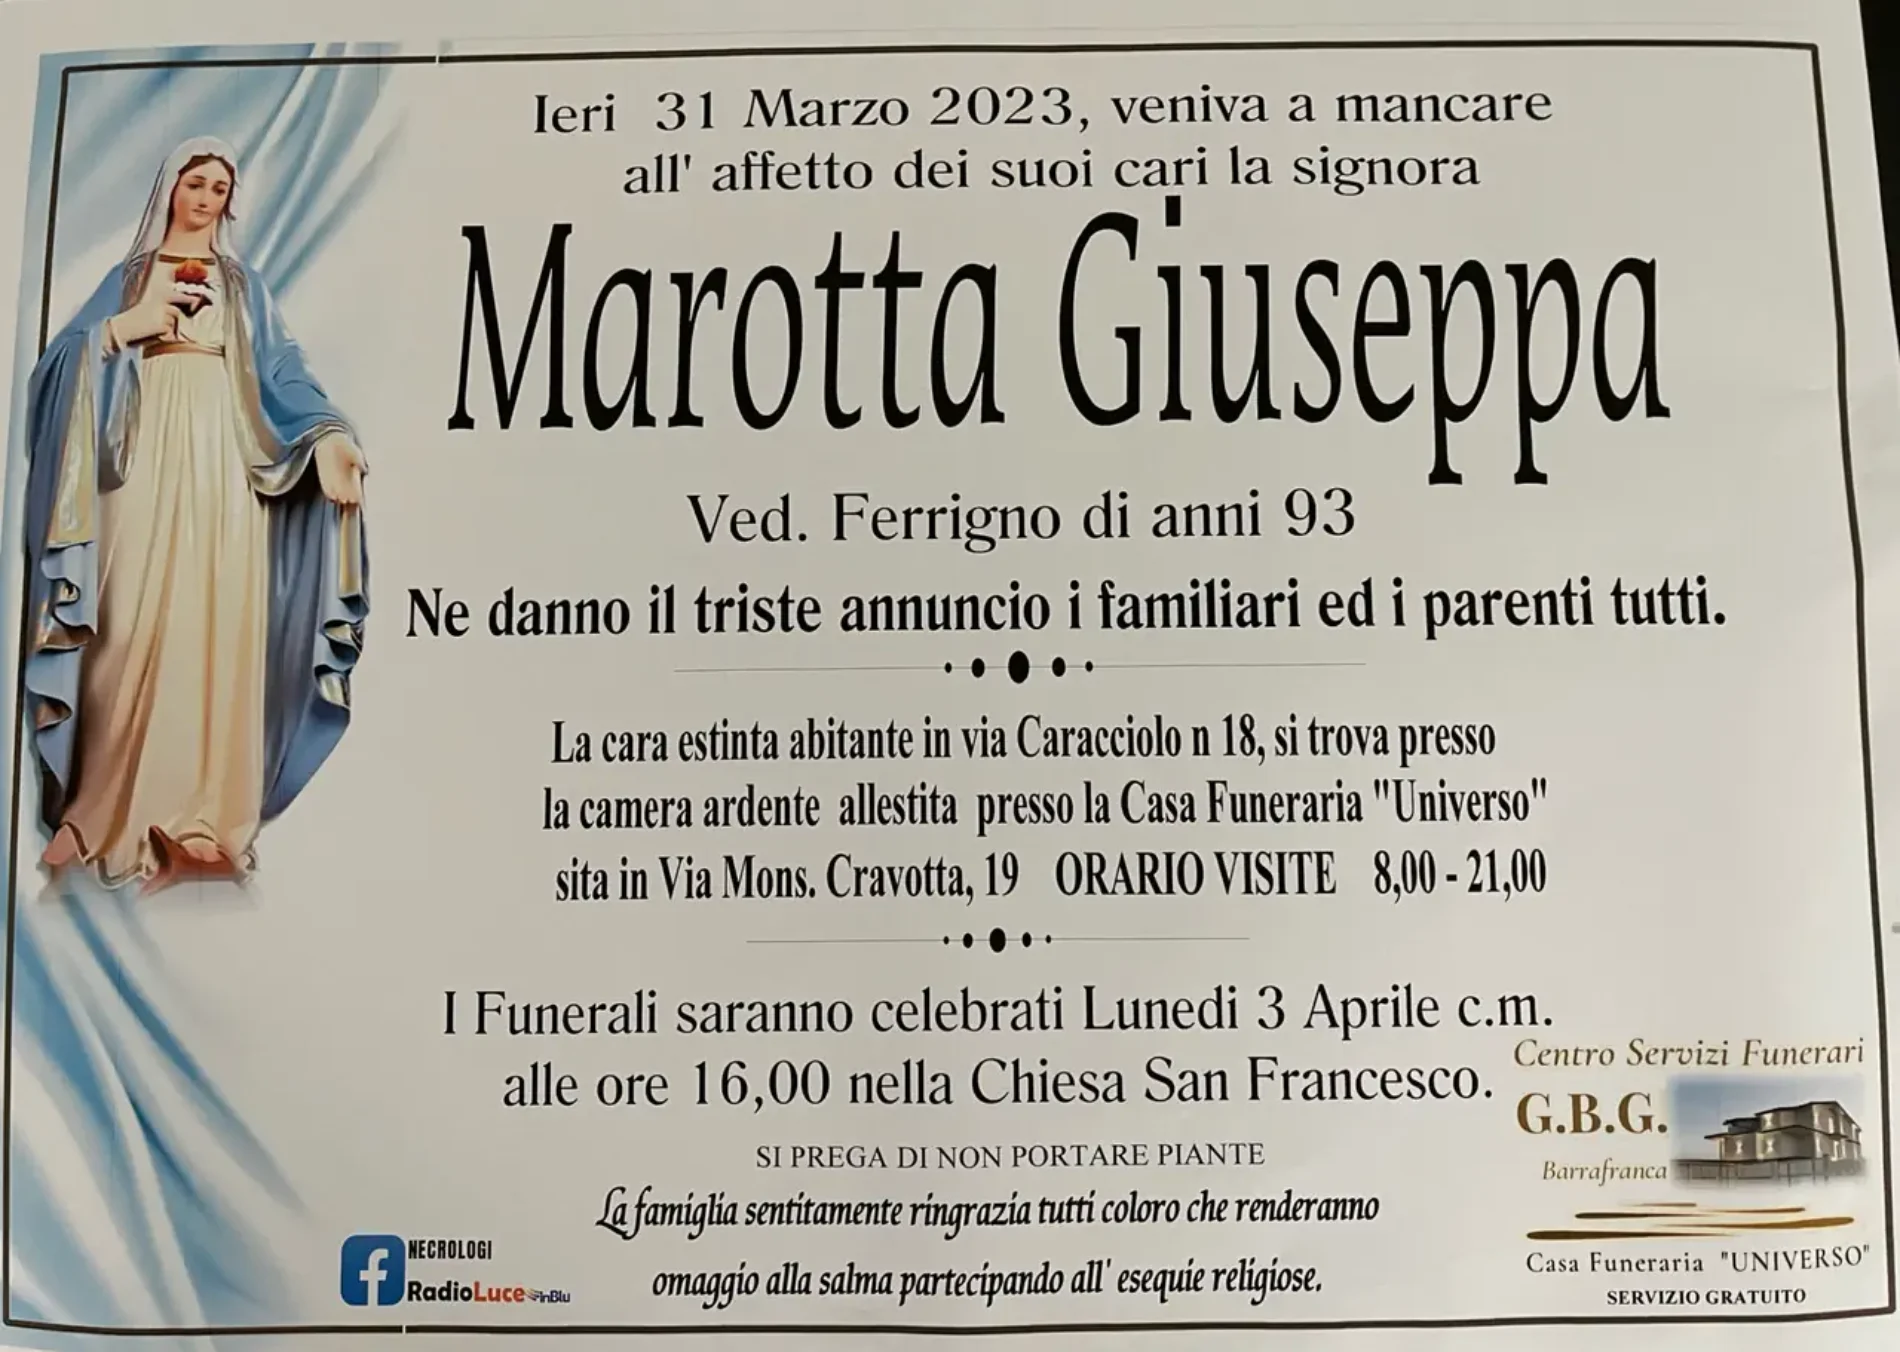 Annuncio servizi funerari agenzia G.B.G. Signora Marotta Giuseppa ved. Ferrigno di anni 93.